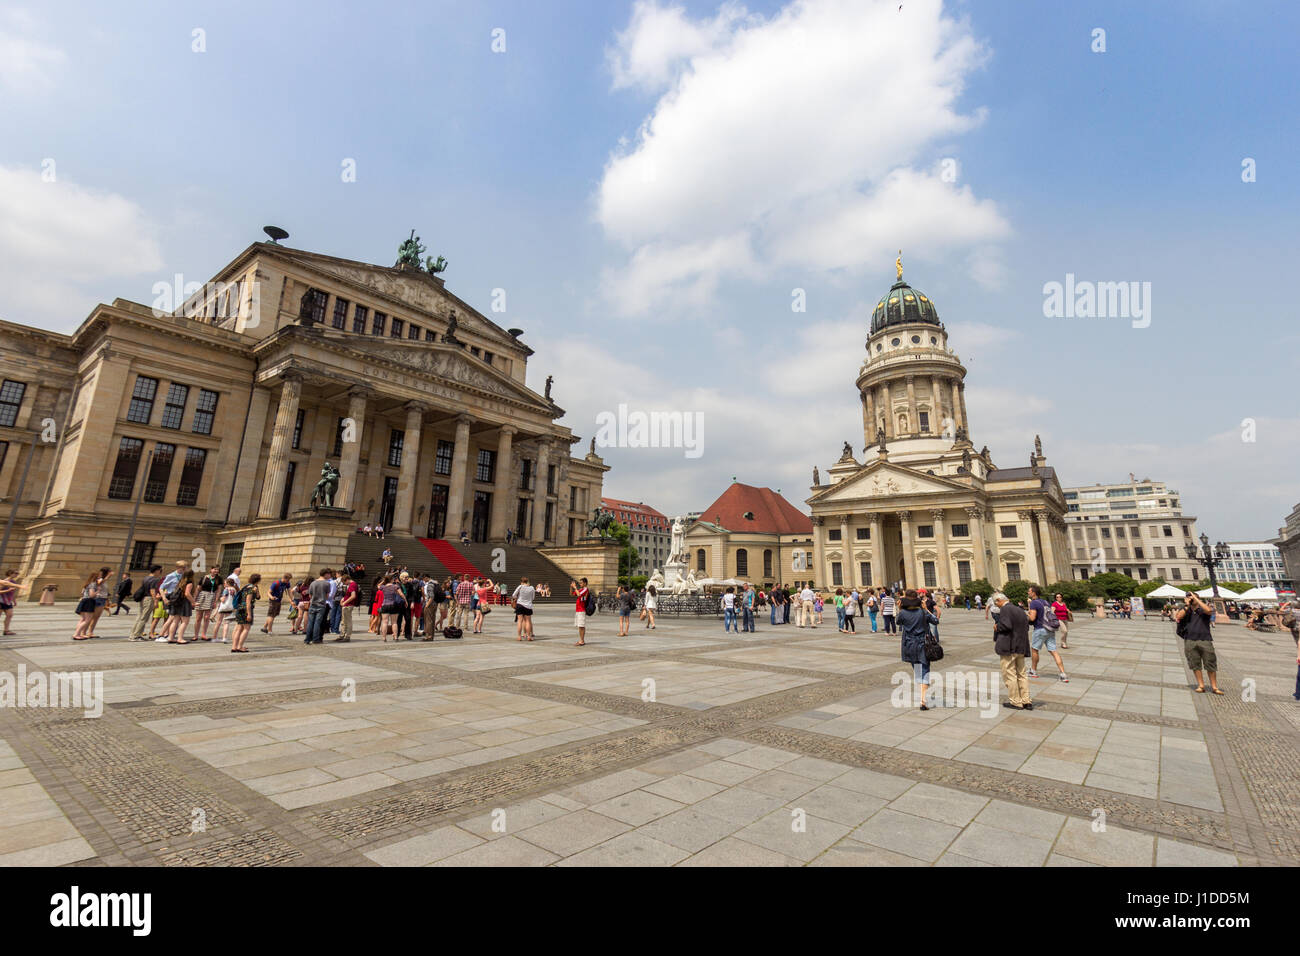 Berlino, Germania - 23 Maggio 2014: Cattedrale tedesca e la sala concerti in piazza Gendarmenmarkt a Berlino, Germania. Foto Stock